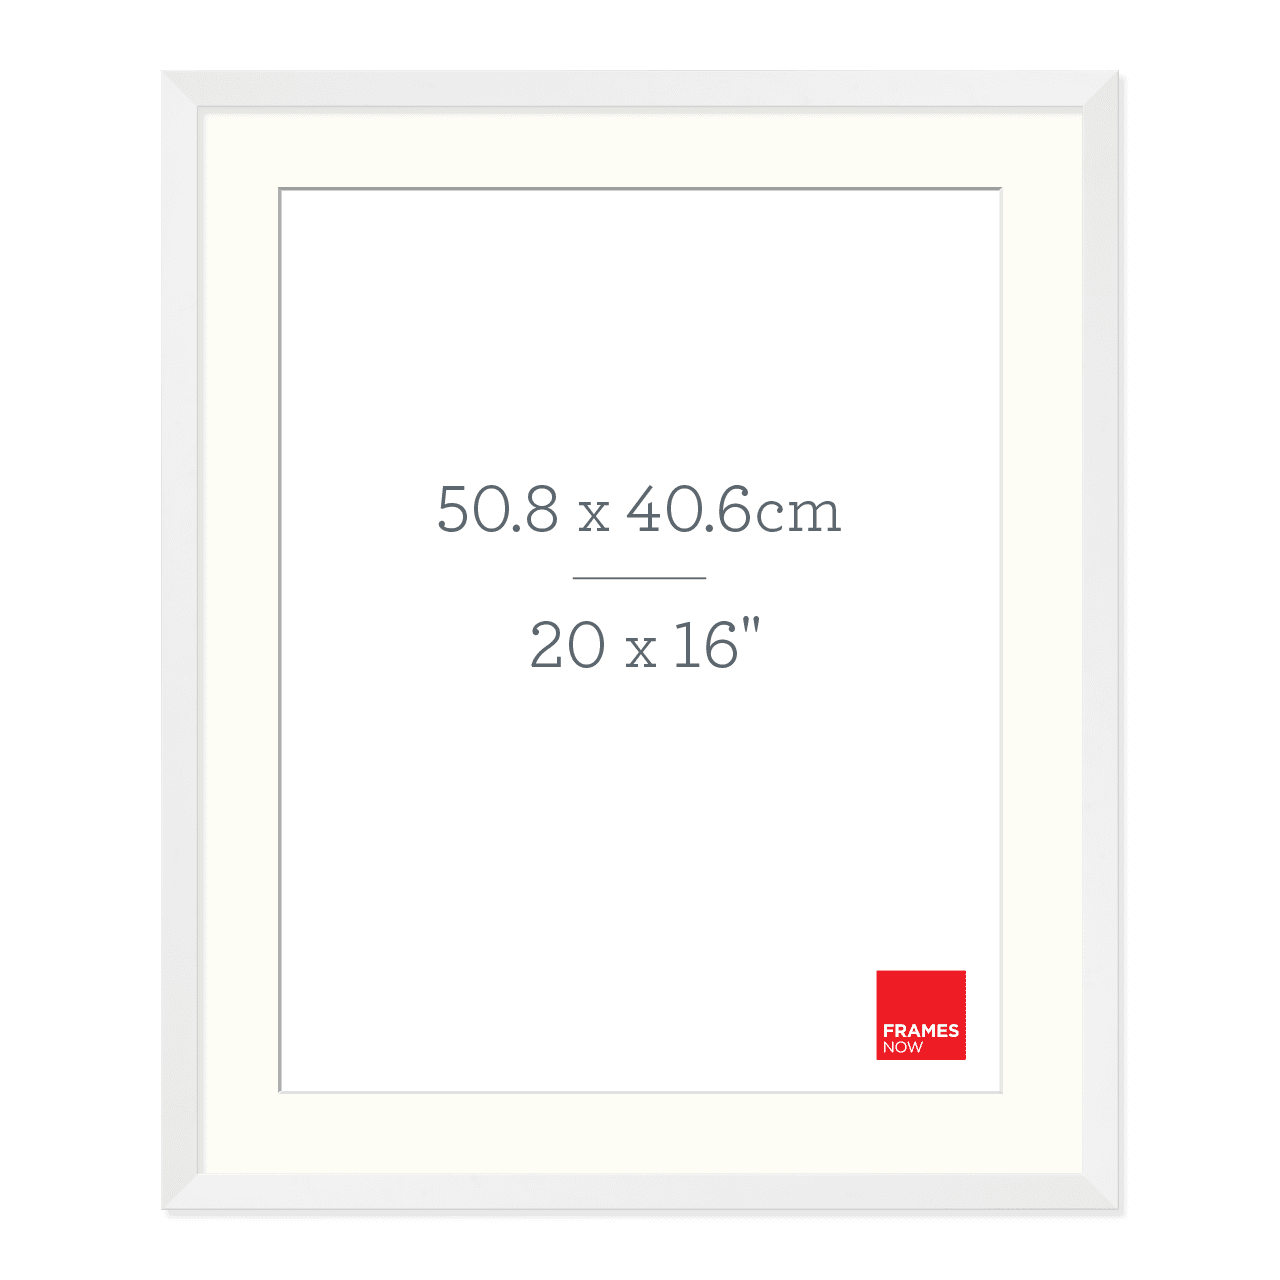 Premium Matte White Box Picture Frame with Matboard for 50.8 x 40.6cm Artwork